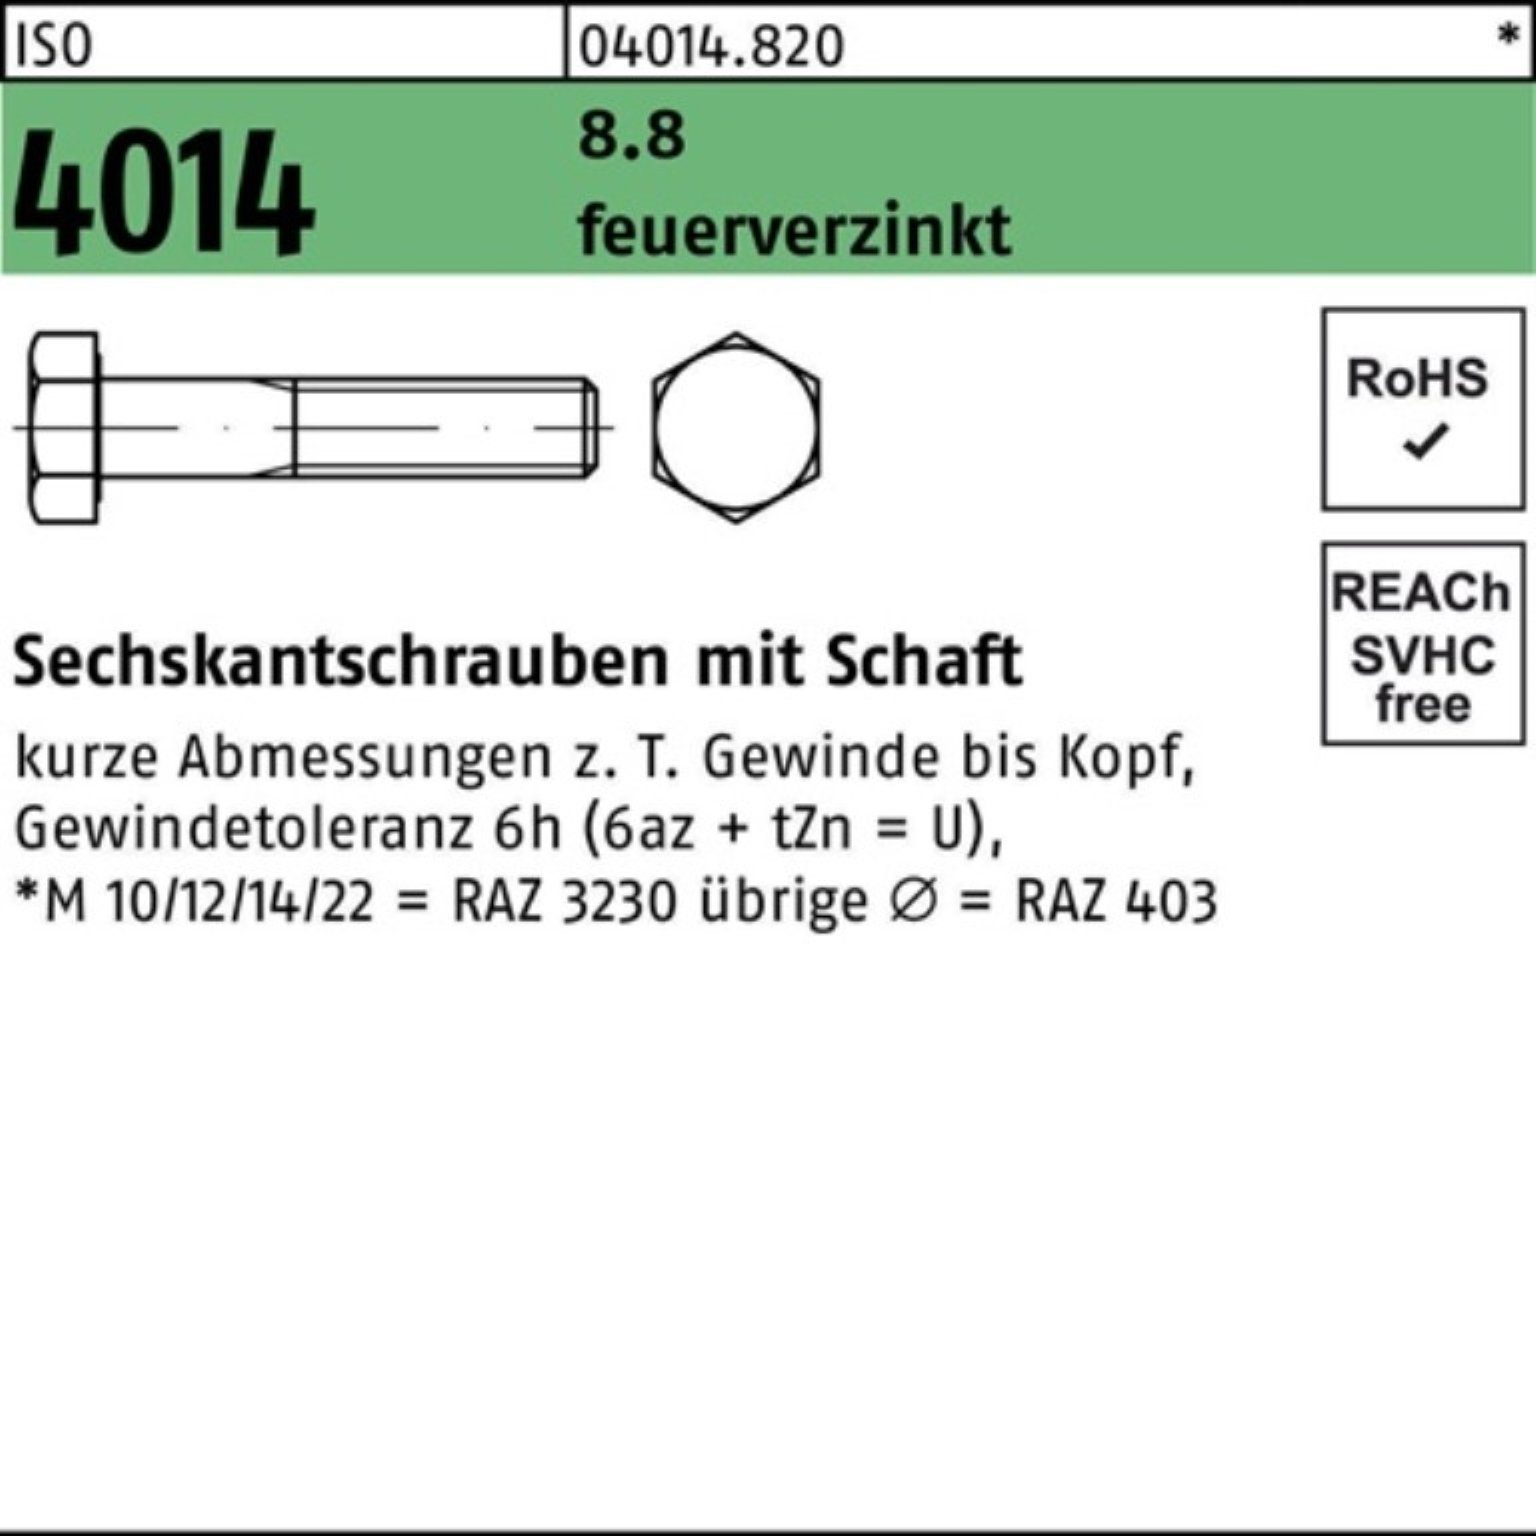 Bufab Sechskantschraube 100er Pack Sechskantschraube ISO 4014 Schaft M16x 140 8.8 feuerverz. 2